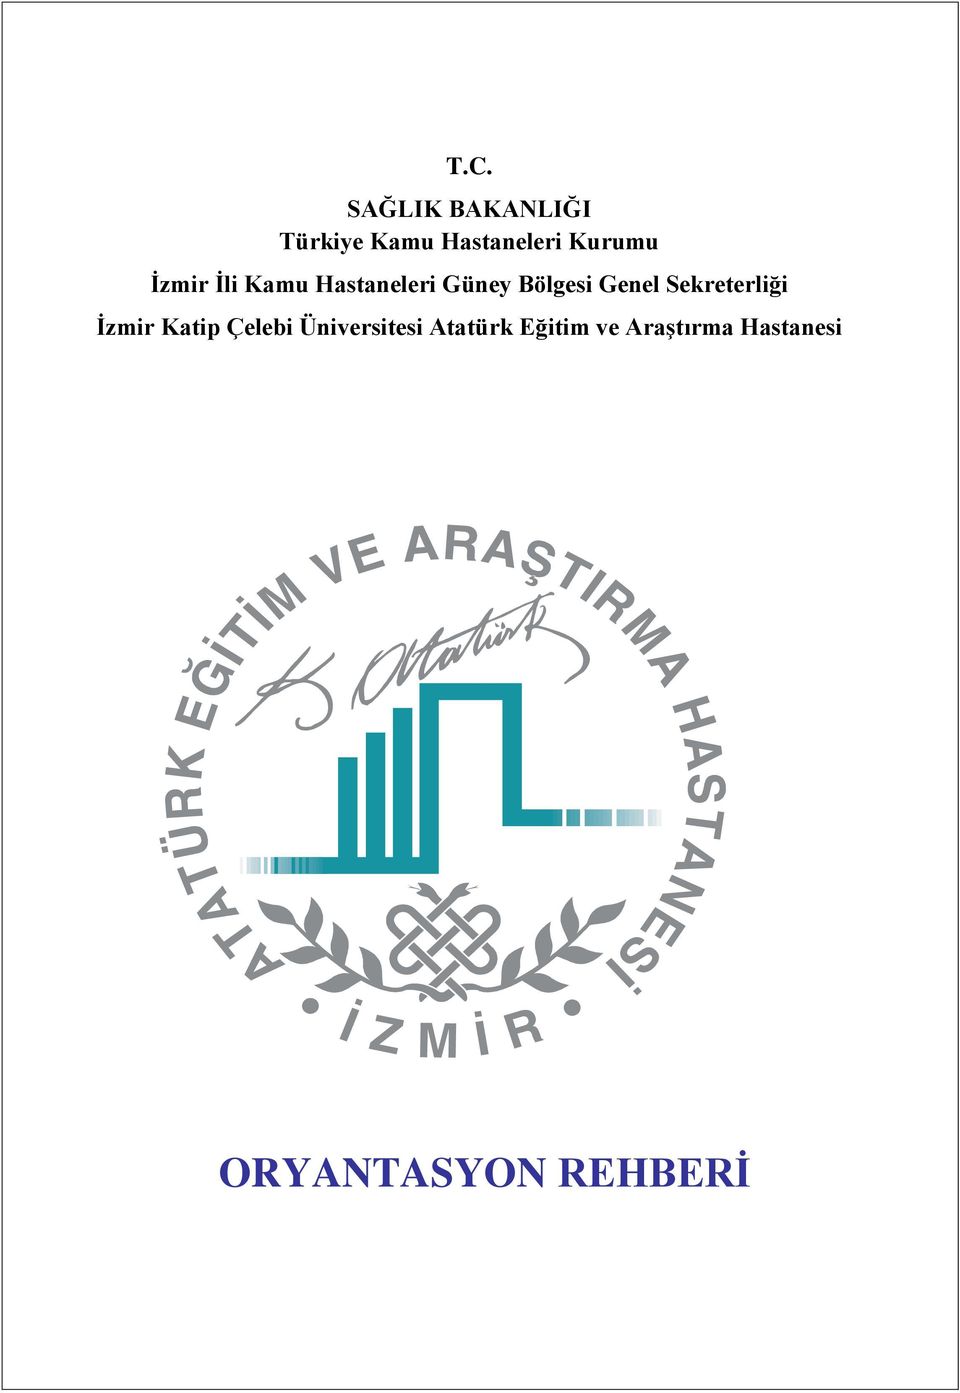 Genel Sekreterliği İzmir Katip Çelebi Üniversitesi